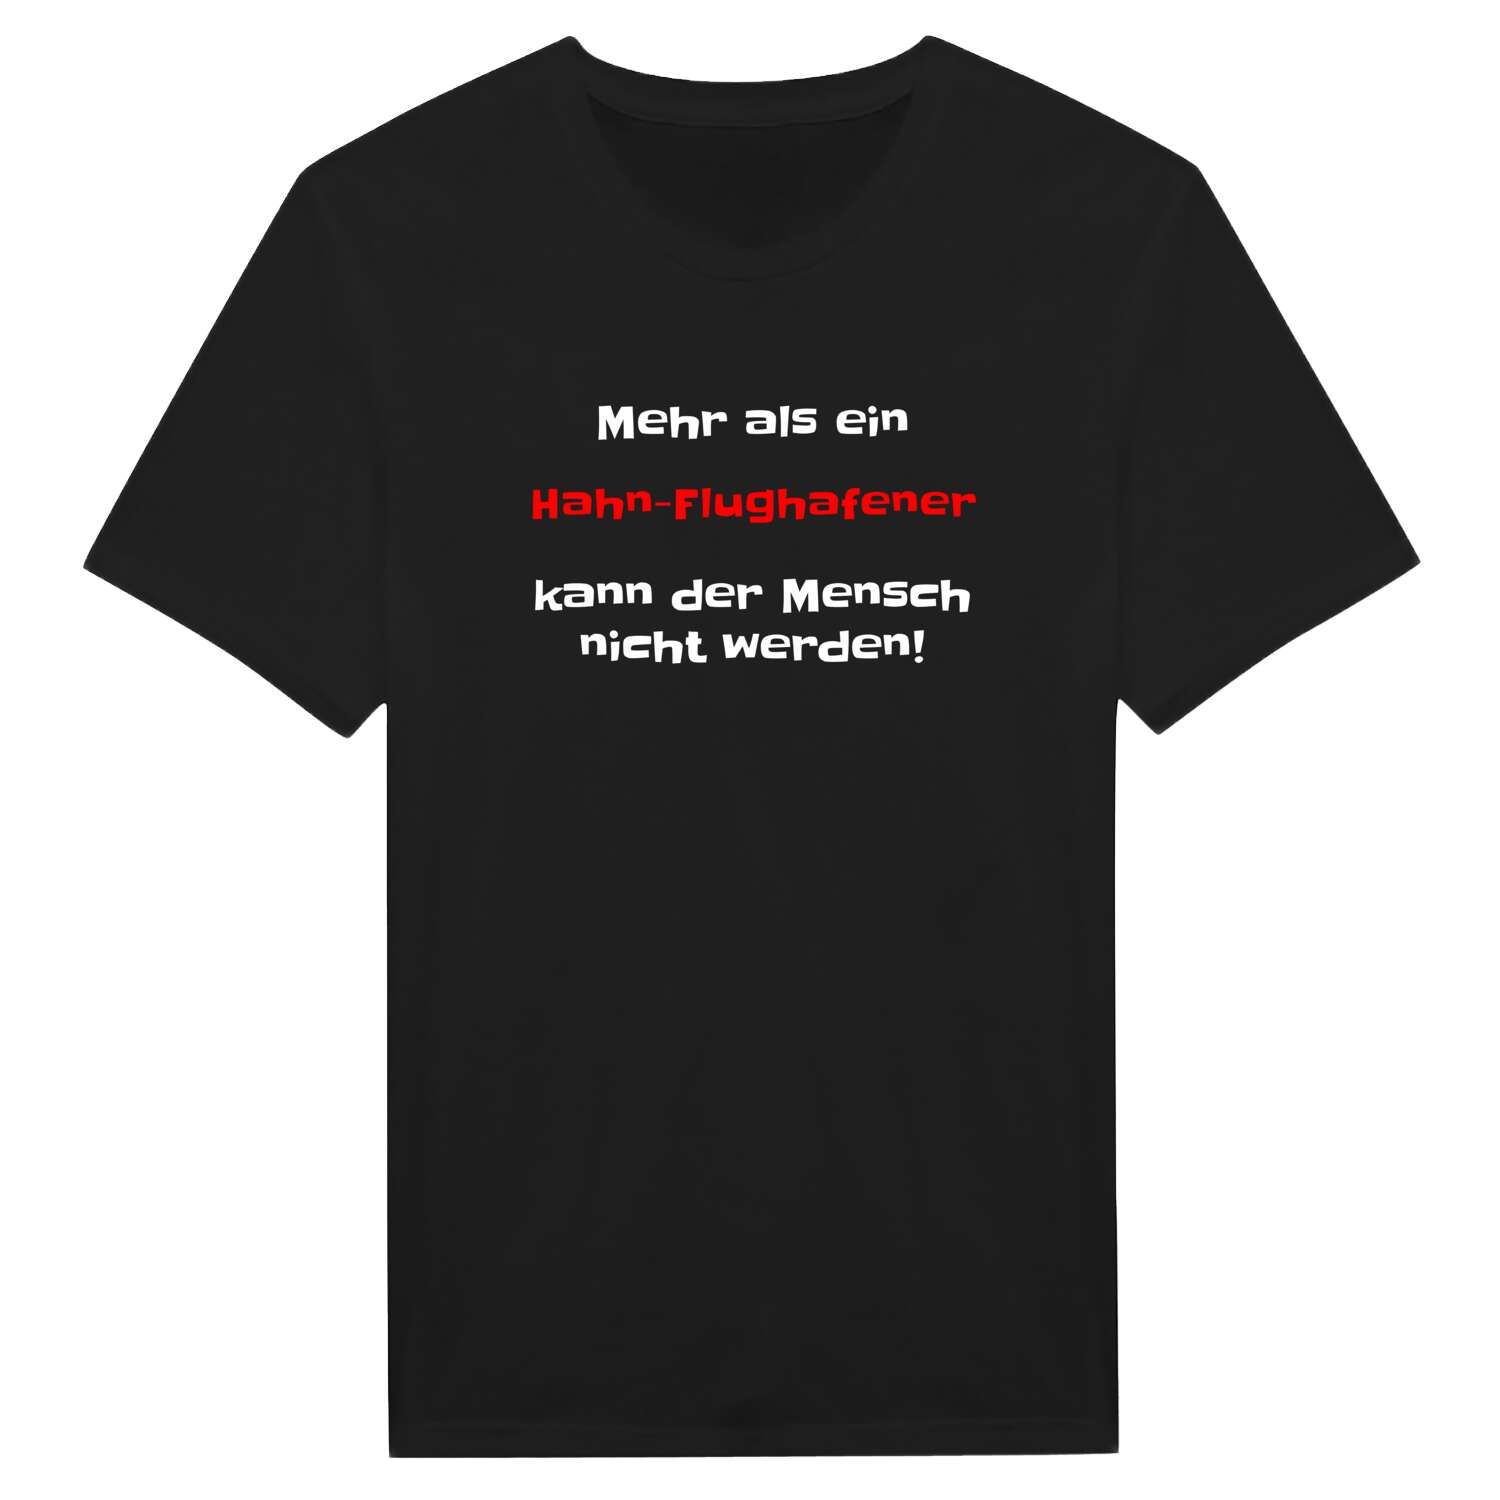 Hahn-Flughafen T-Shirt »Mehr als ein«